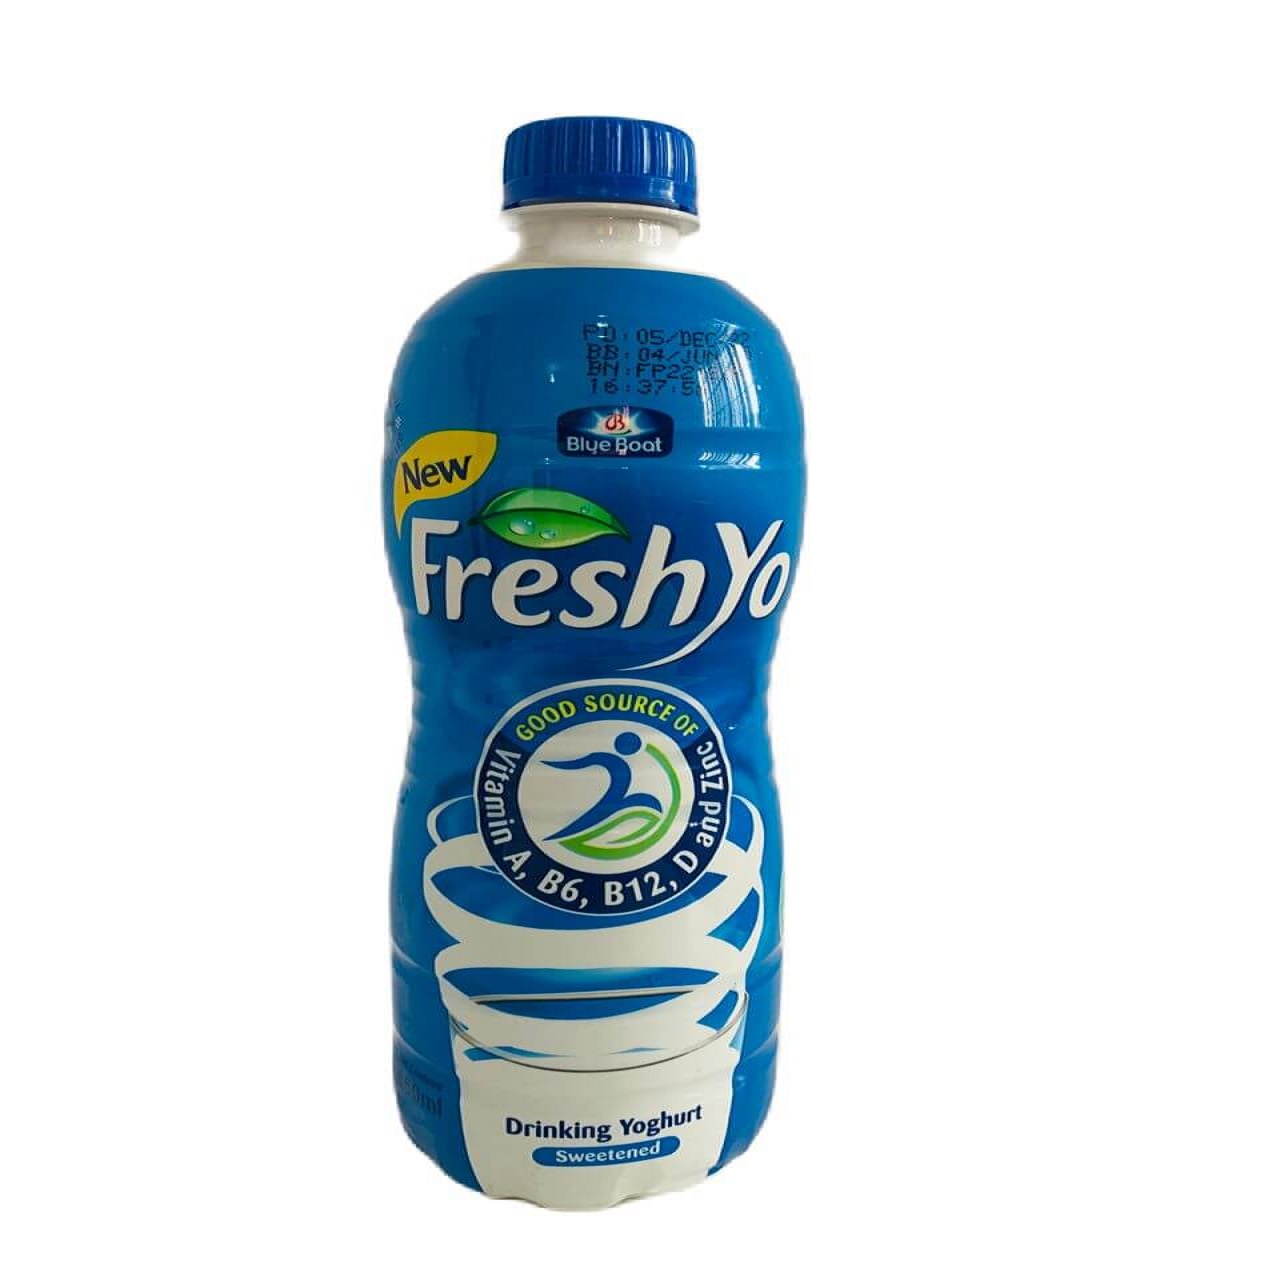 A 650ml bottle of freshyo yoghurt